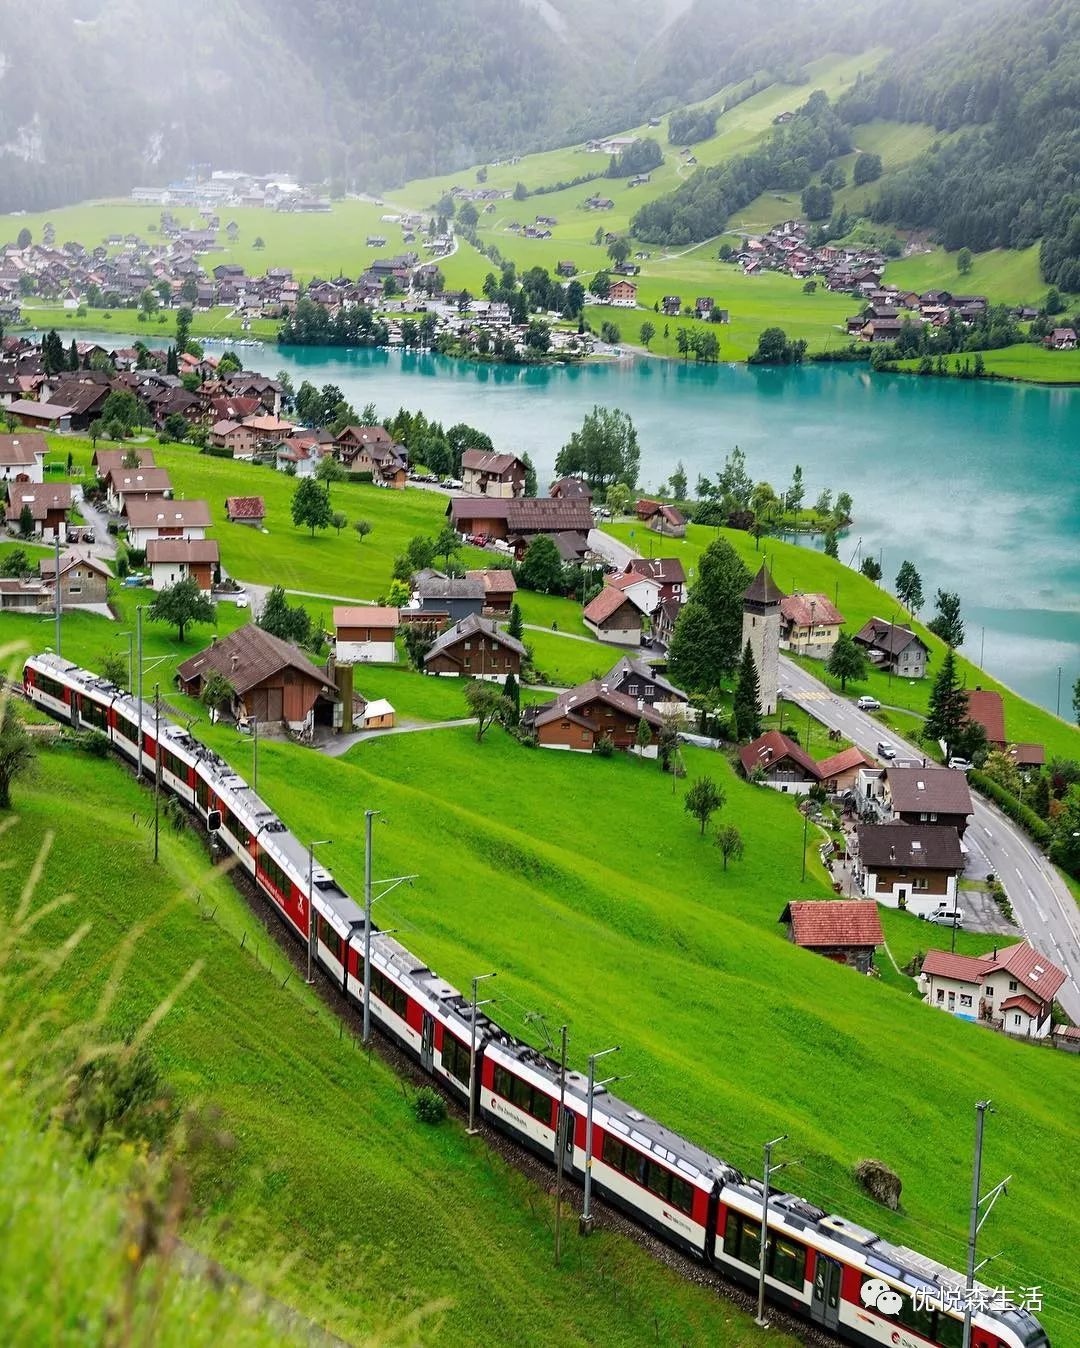 雪后的瑞士小镇夜景,根本就是童话里的梦幻世界吧!